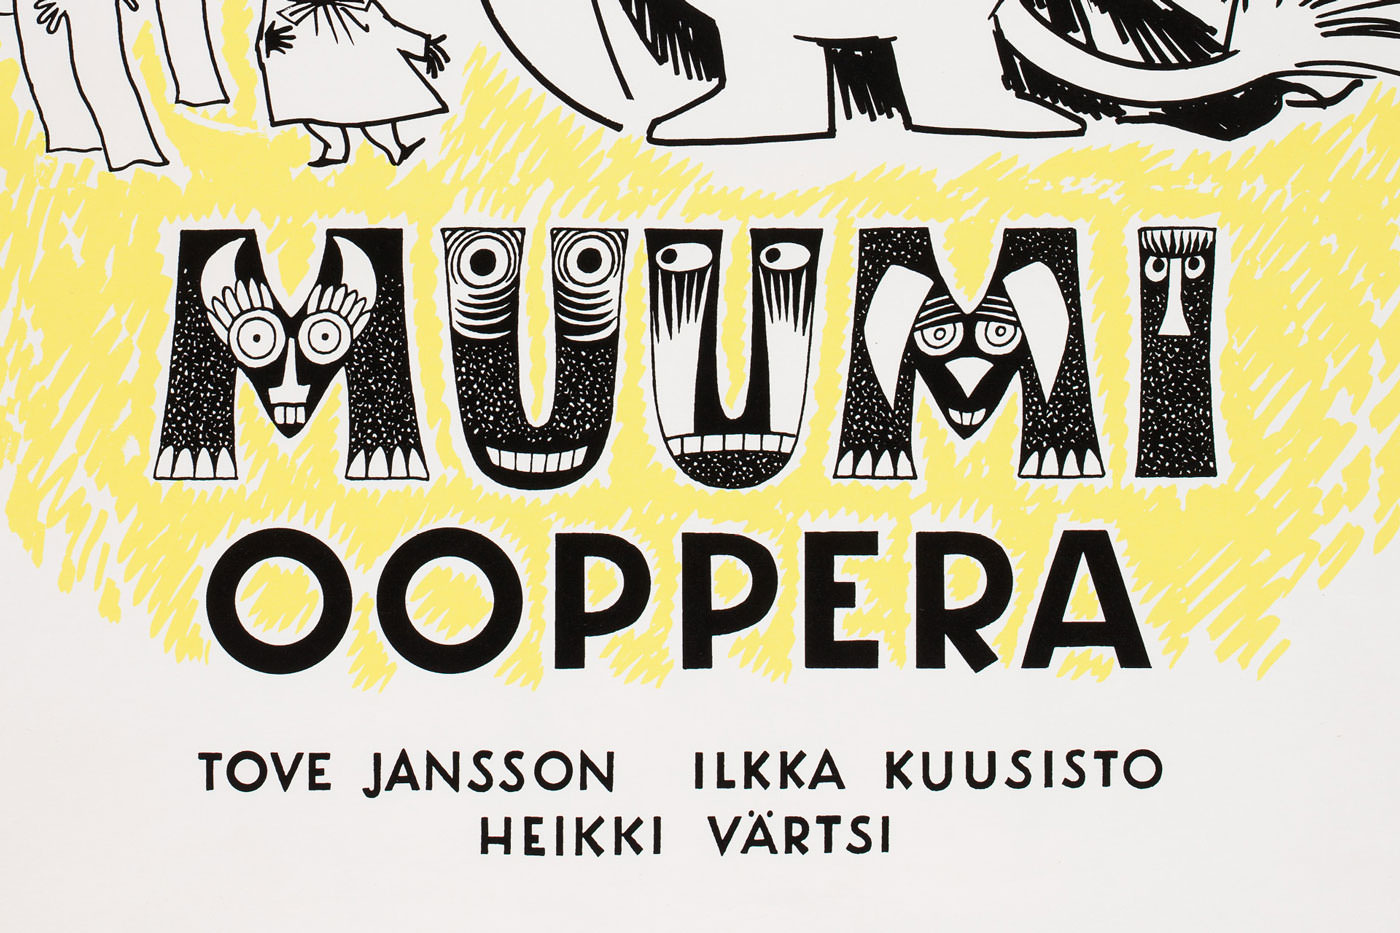 Mumin-opera Tove Jansson